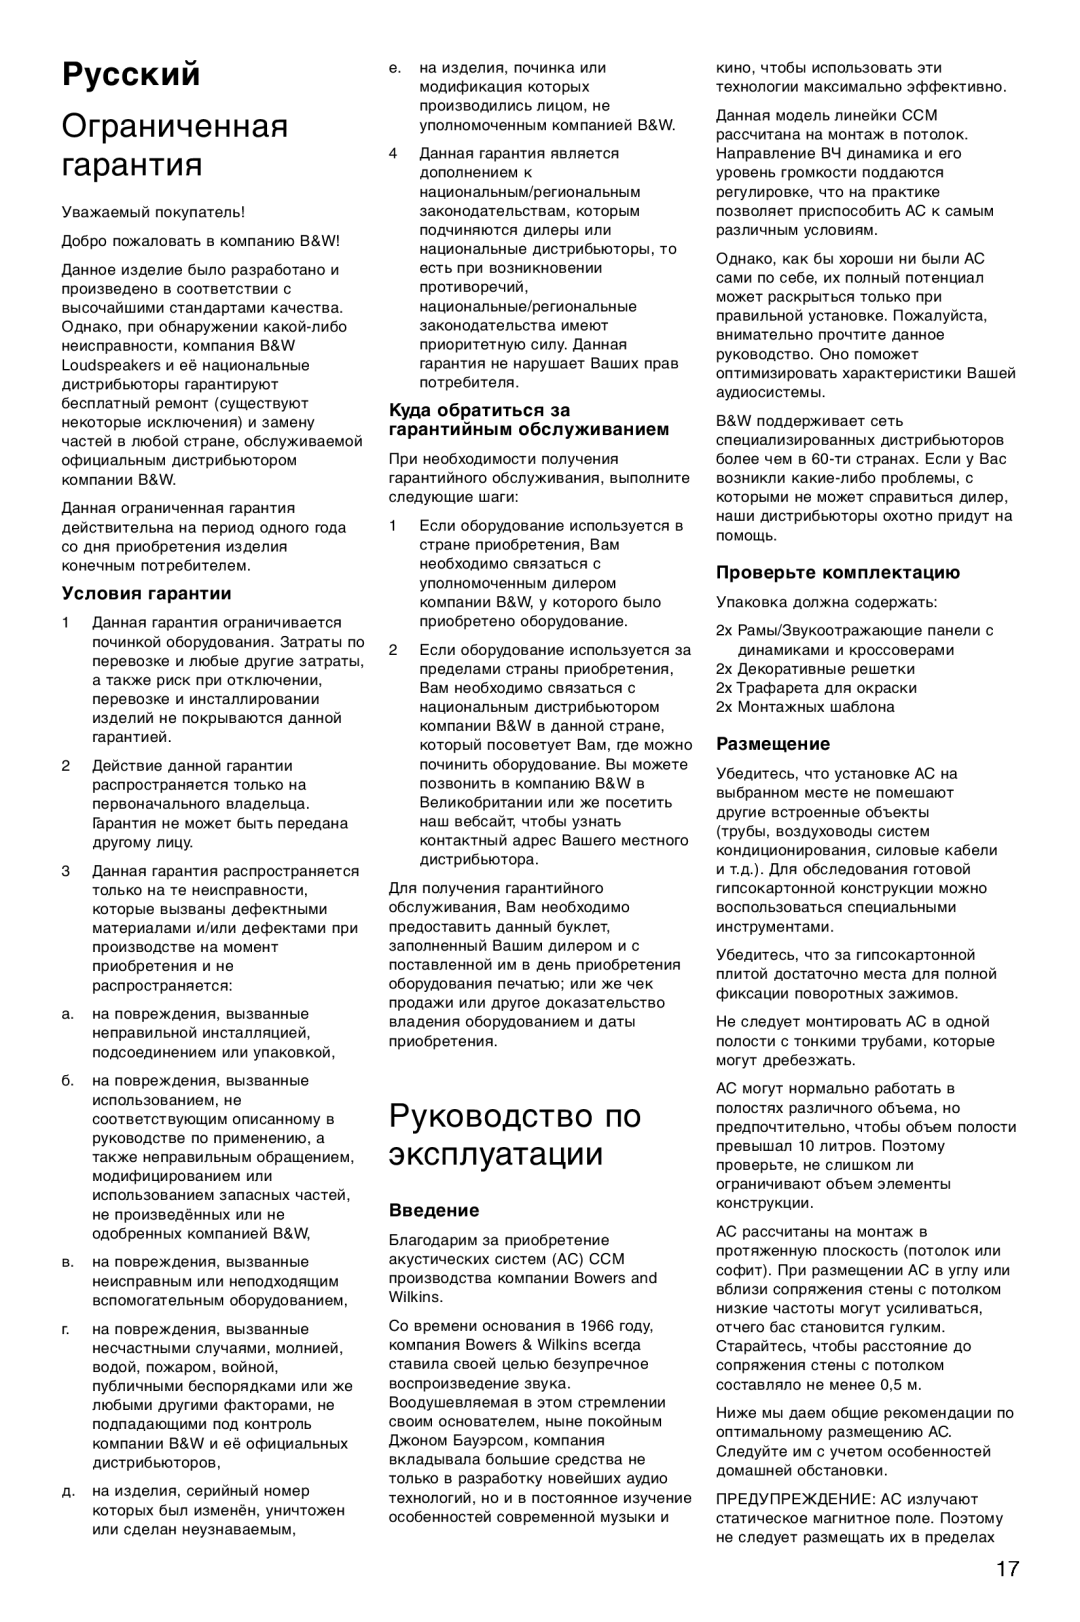 Bowers & Wilkins CCM626 Русский, Ограниченная гарантия, Руководство по эксплуатации, Условия гарантии, Введение 